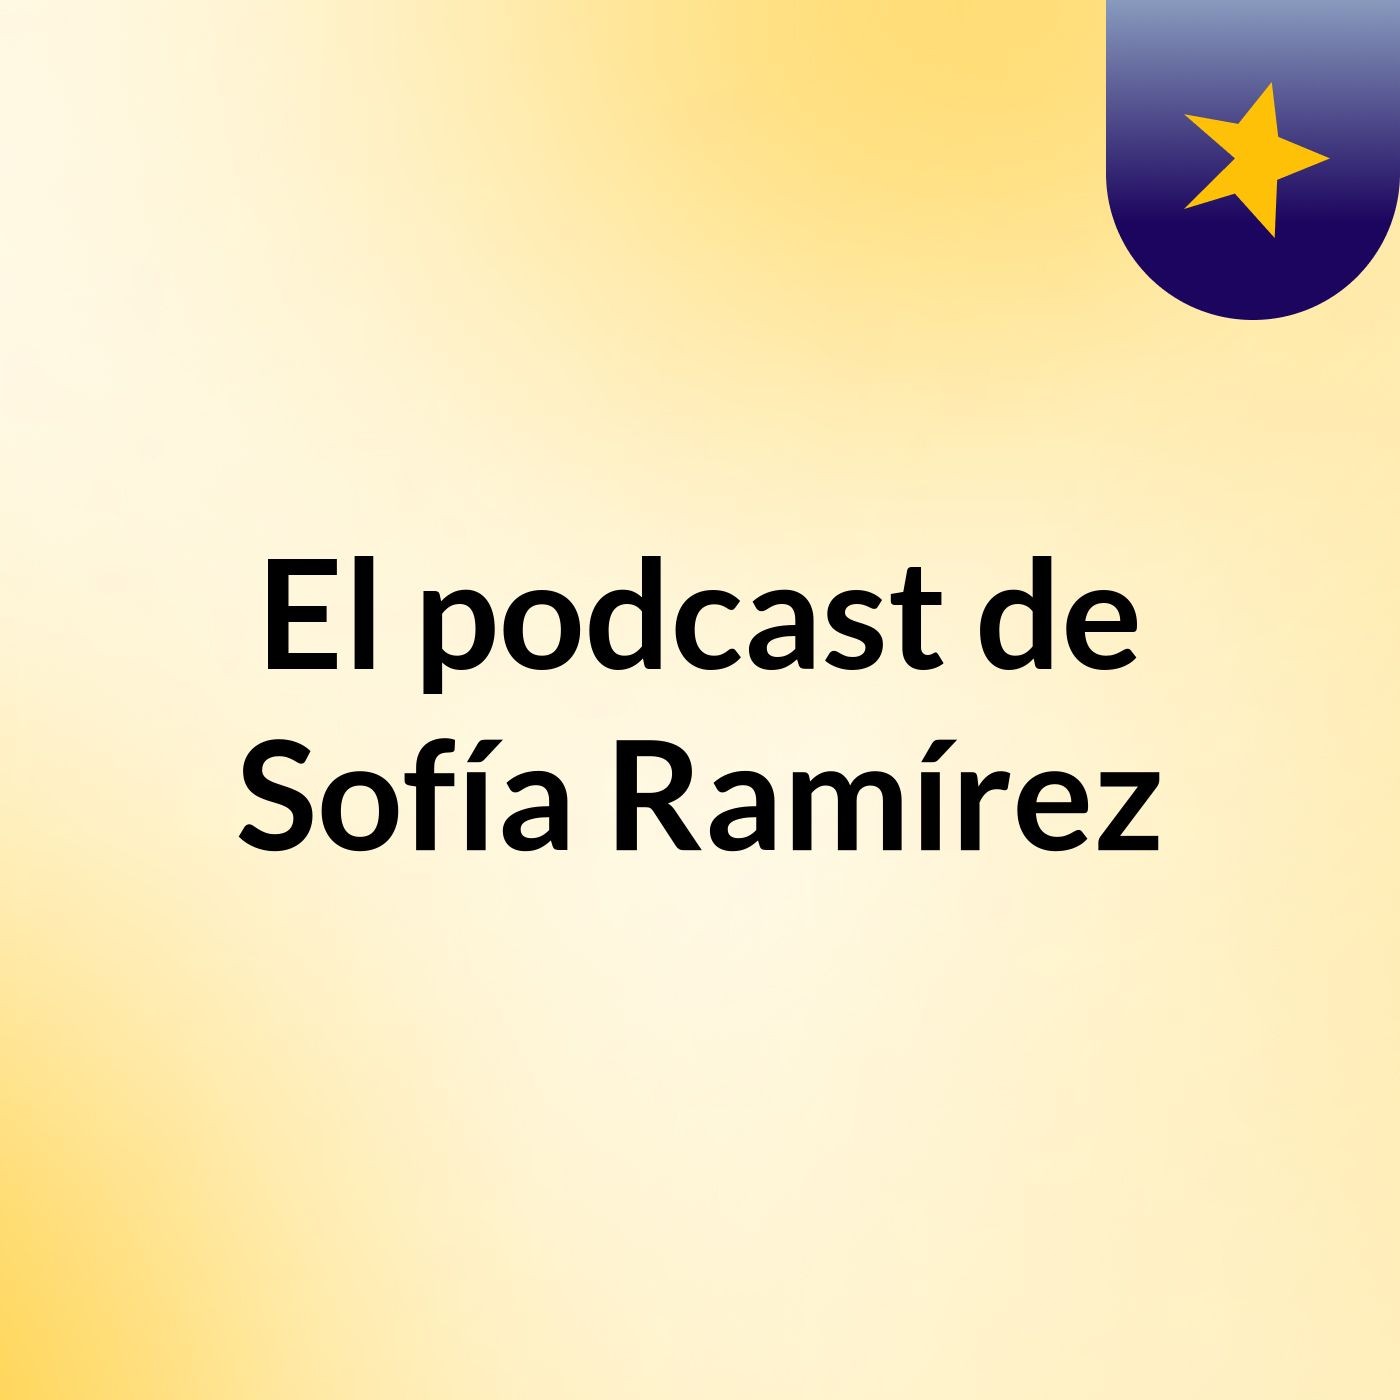 El podcast de Sofía Ramírez